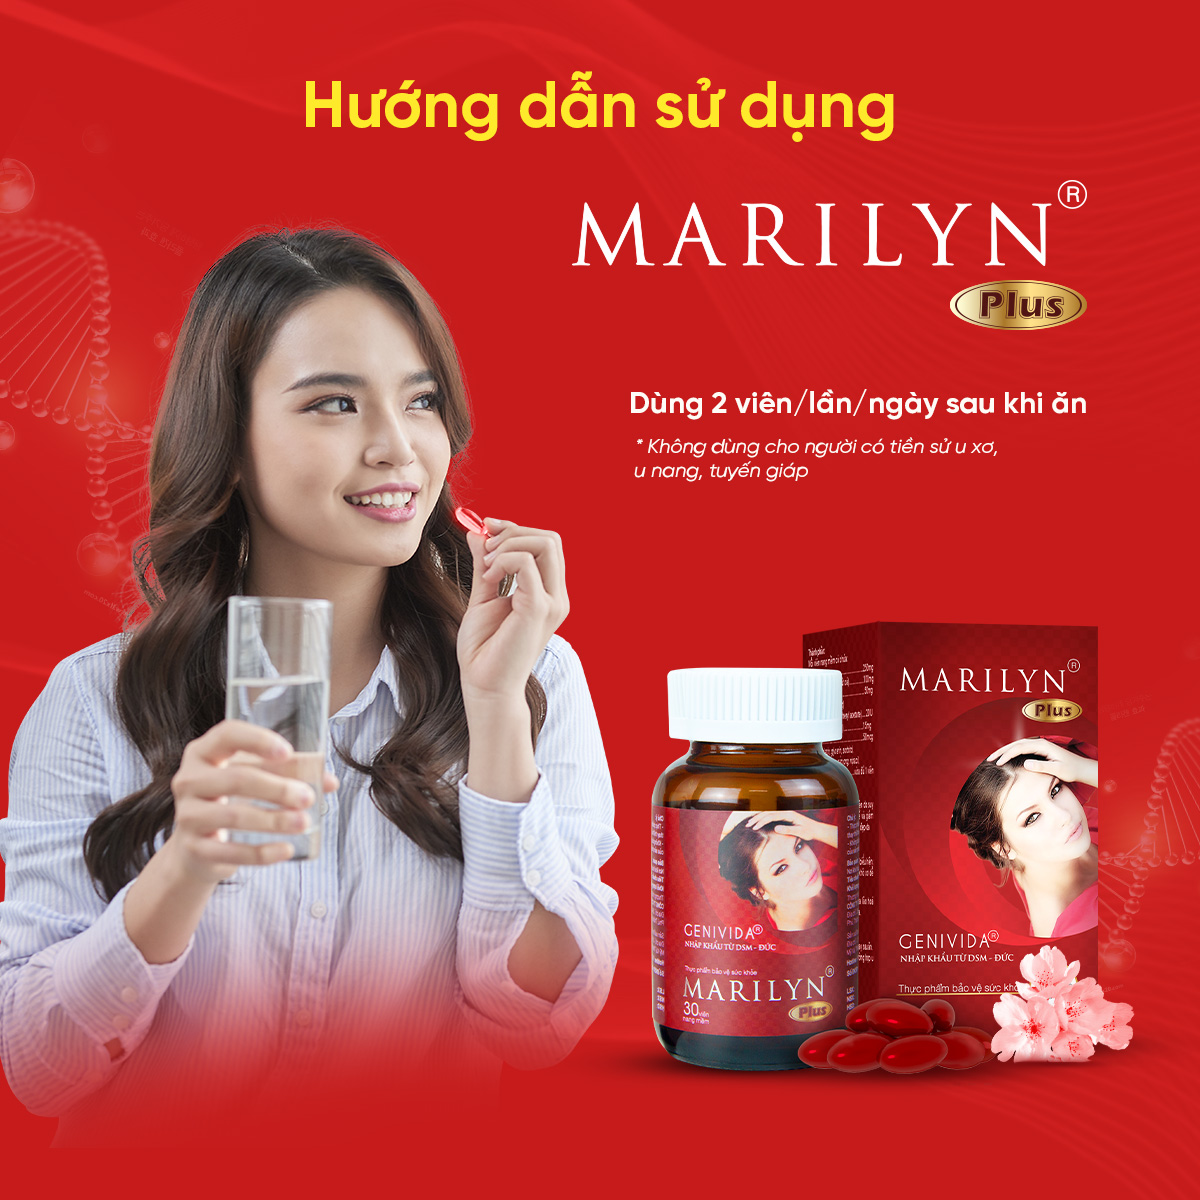 [Giảm Khô Hạn - Tăng Sinh Lý Nữ] Combo 3 Hộp Viên Uống Marilyn Plus Giúp Cân Bằng Nội Tiết Tố Cải Thiện Sinh Lý Nữ (Hiệu quả sau 45 ngày sử dụng)